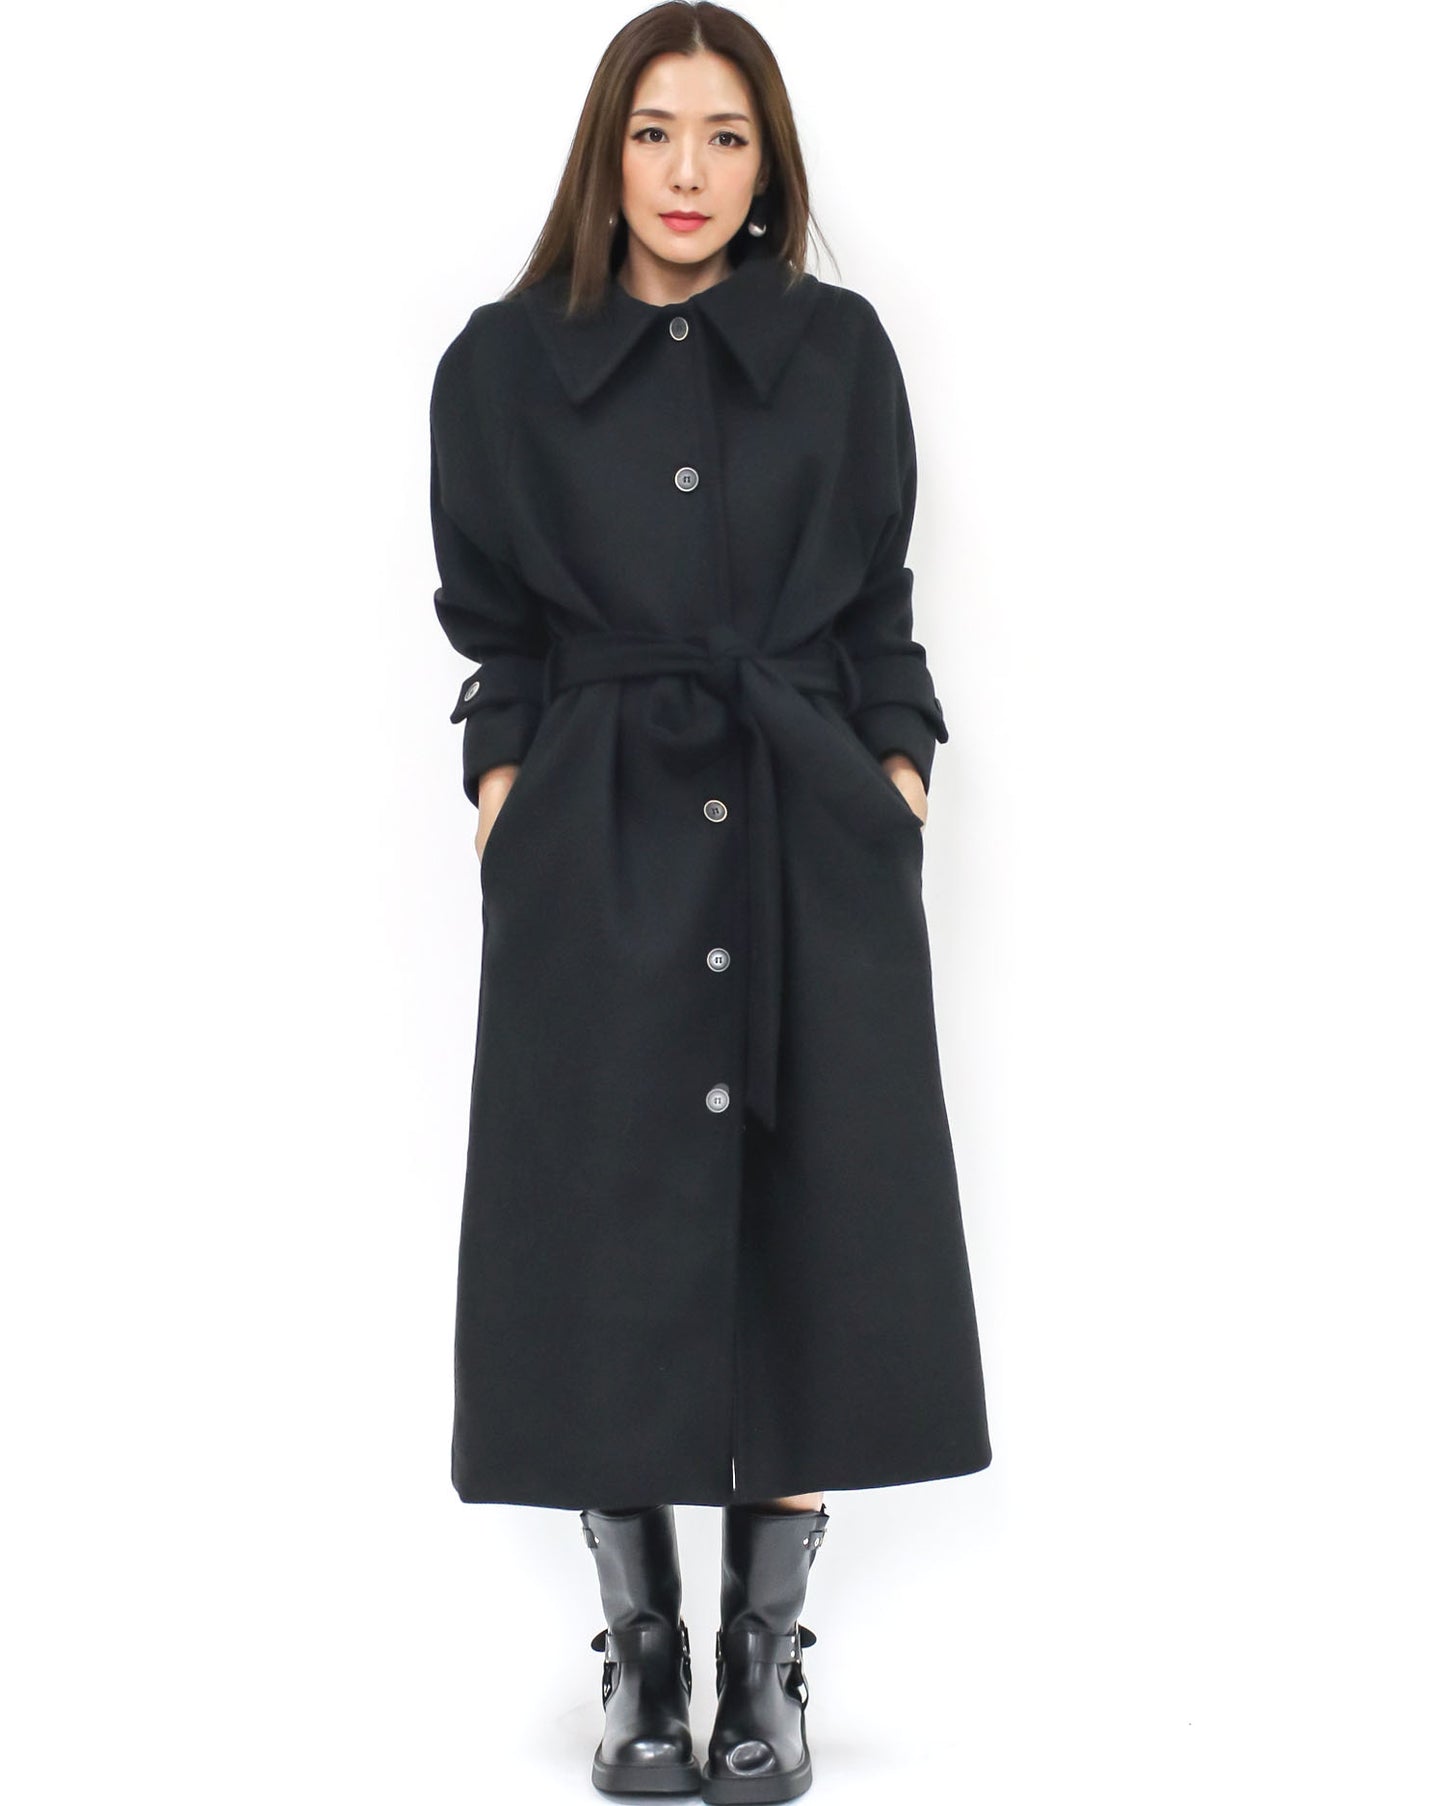 black wool blended longline jacket w/ wrap belt – STYLEGAL